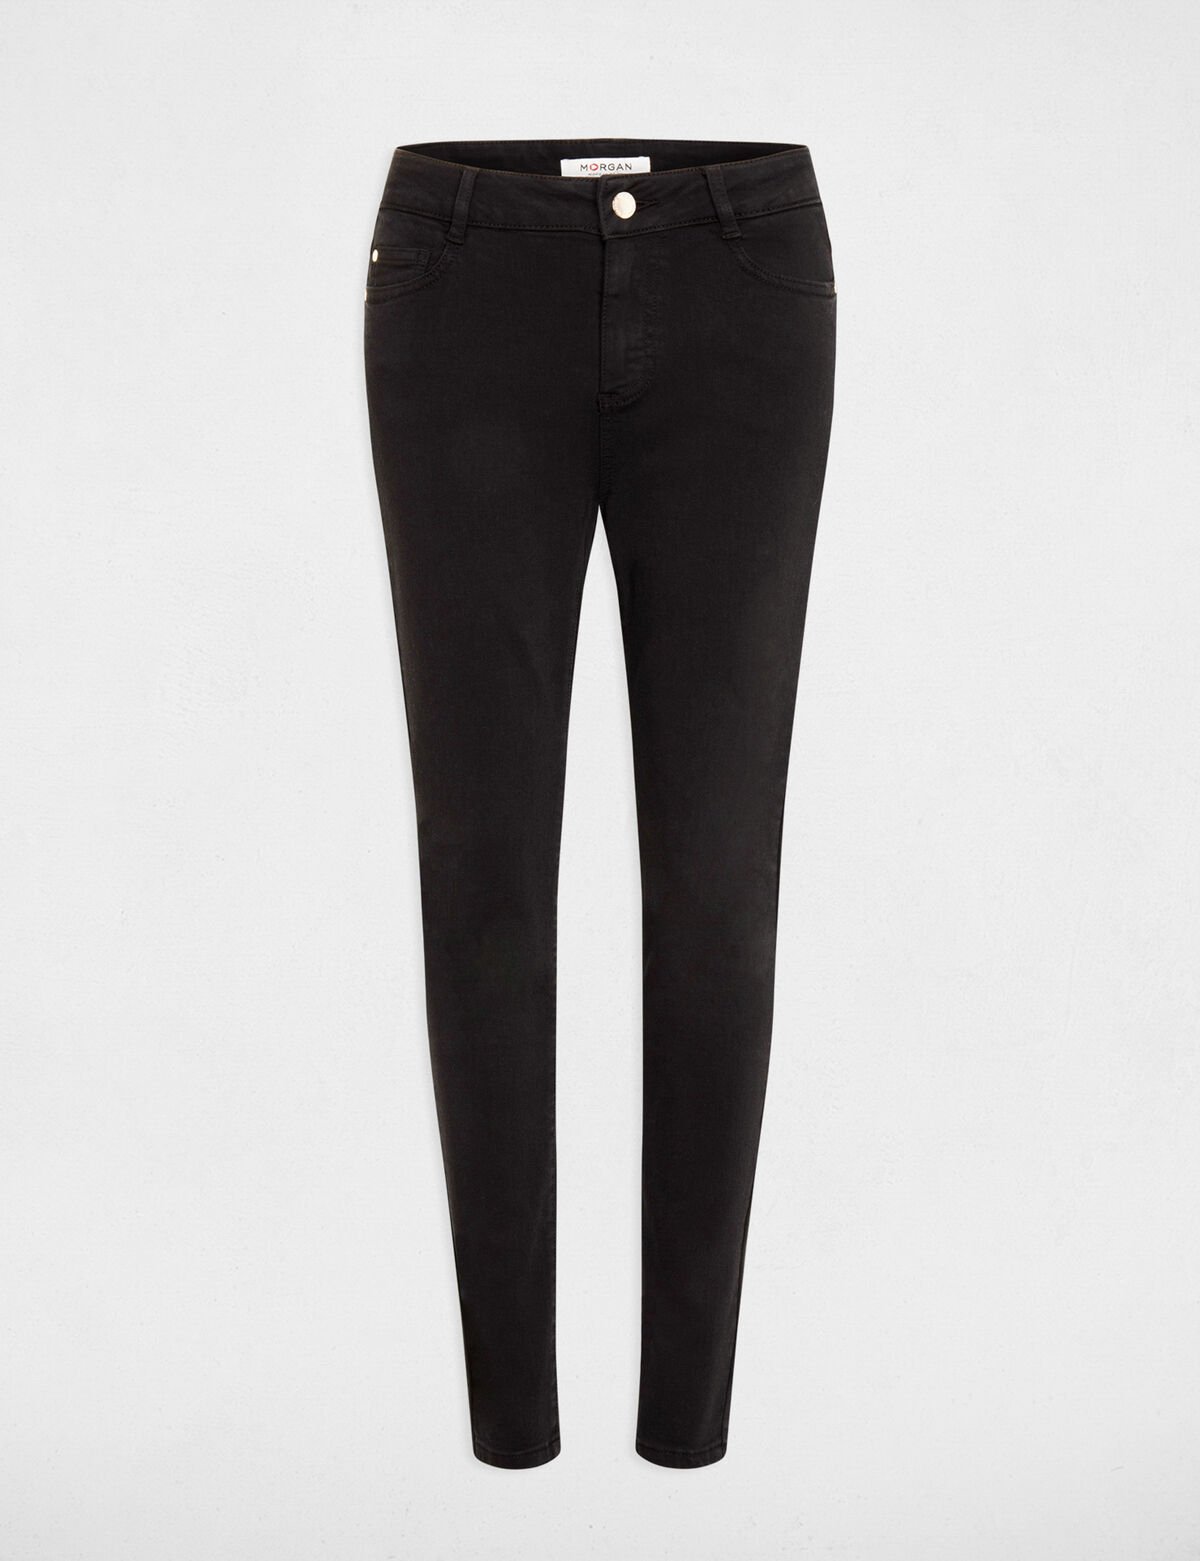 Pantalón skinny estilo corto 5 bolsillos negro 241-Polia